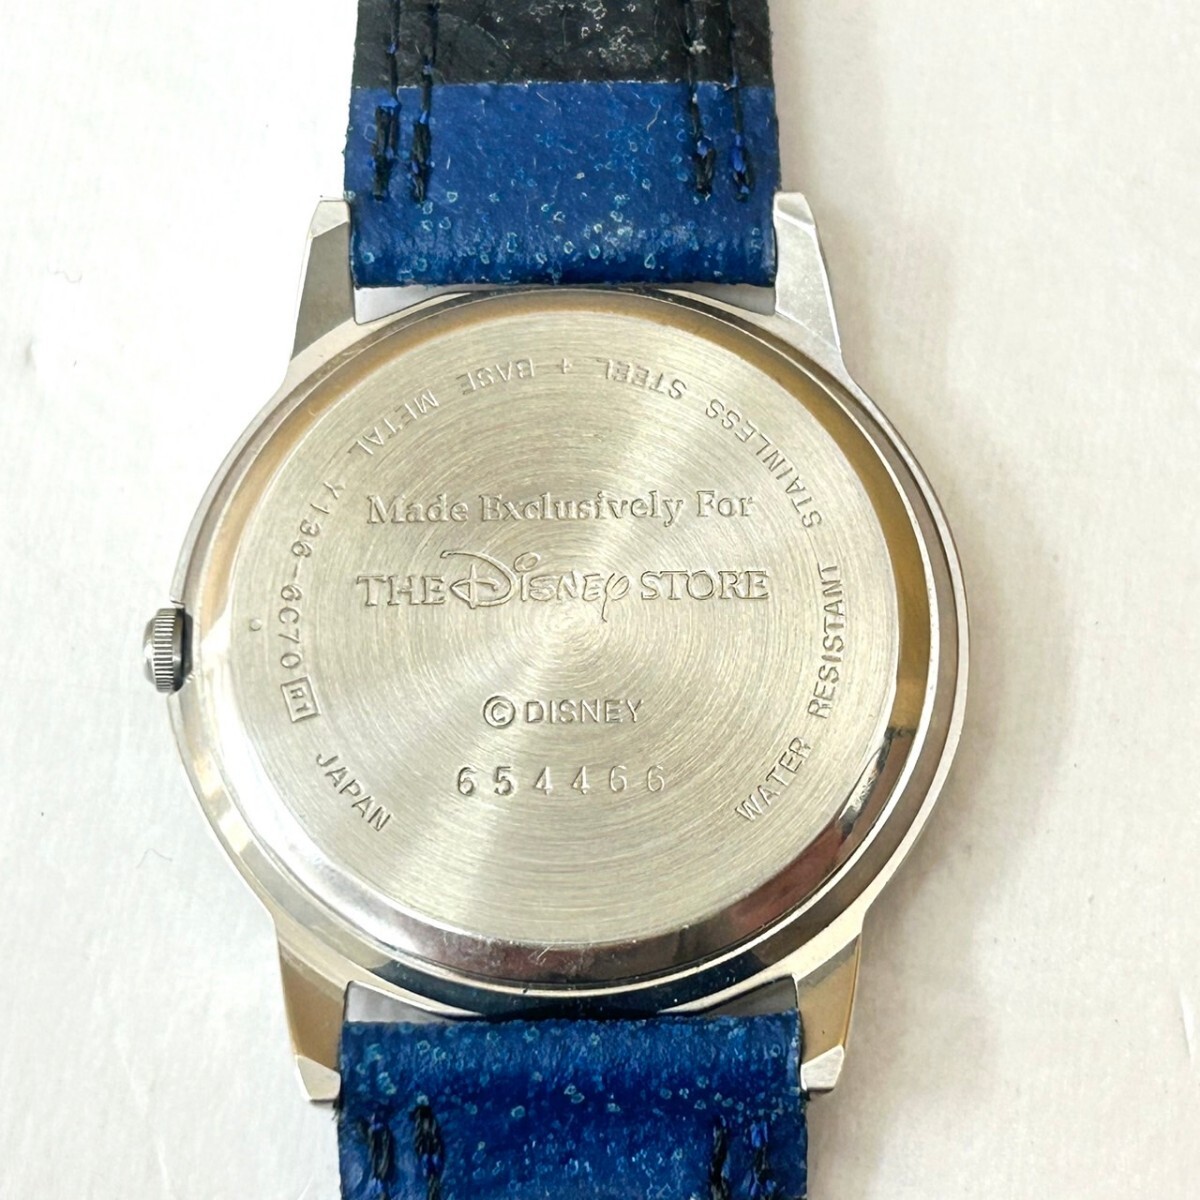  Junk The Disney Store Disney наручные часы Y136-6C70 кварц!